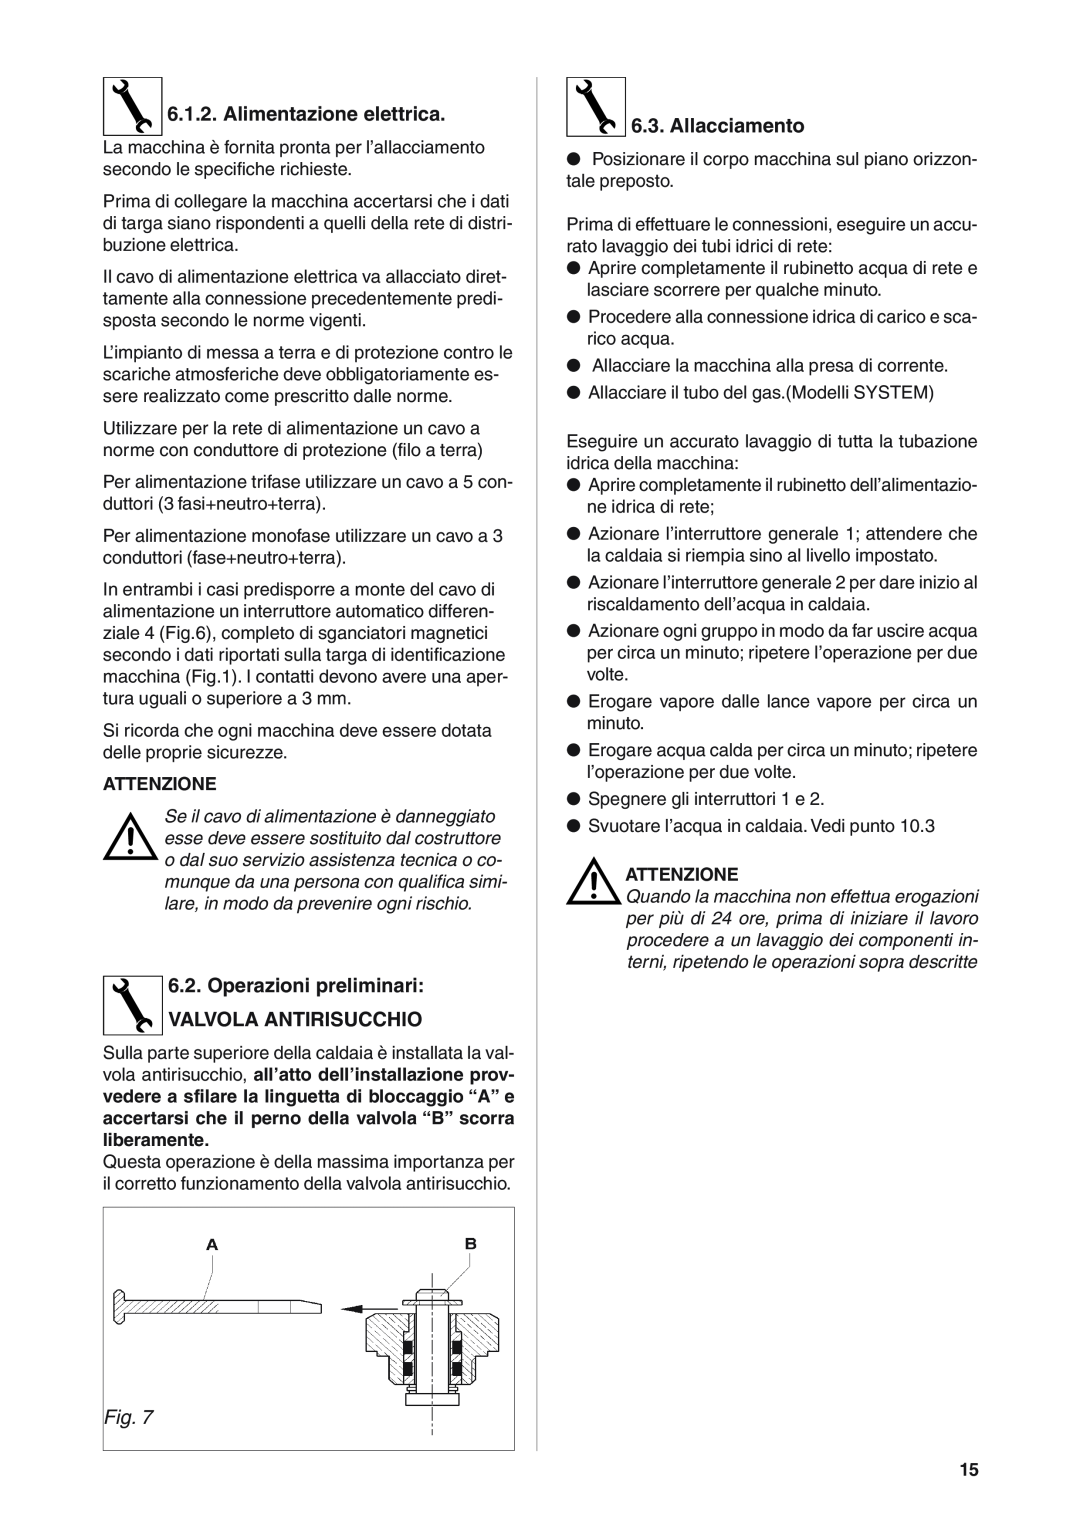 Rancilio S20 manual Alimentazione elettrica, Operazioni preliminari VALVOLA ANTIRISUCCHIO, Allacciamento 